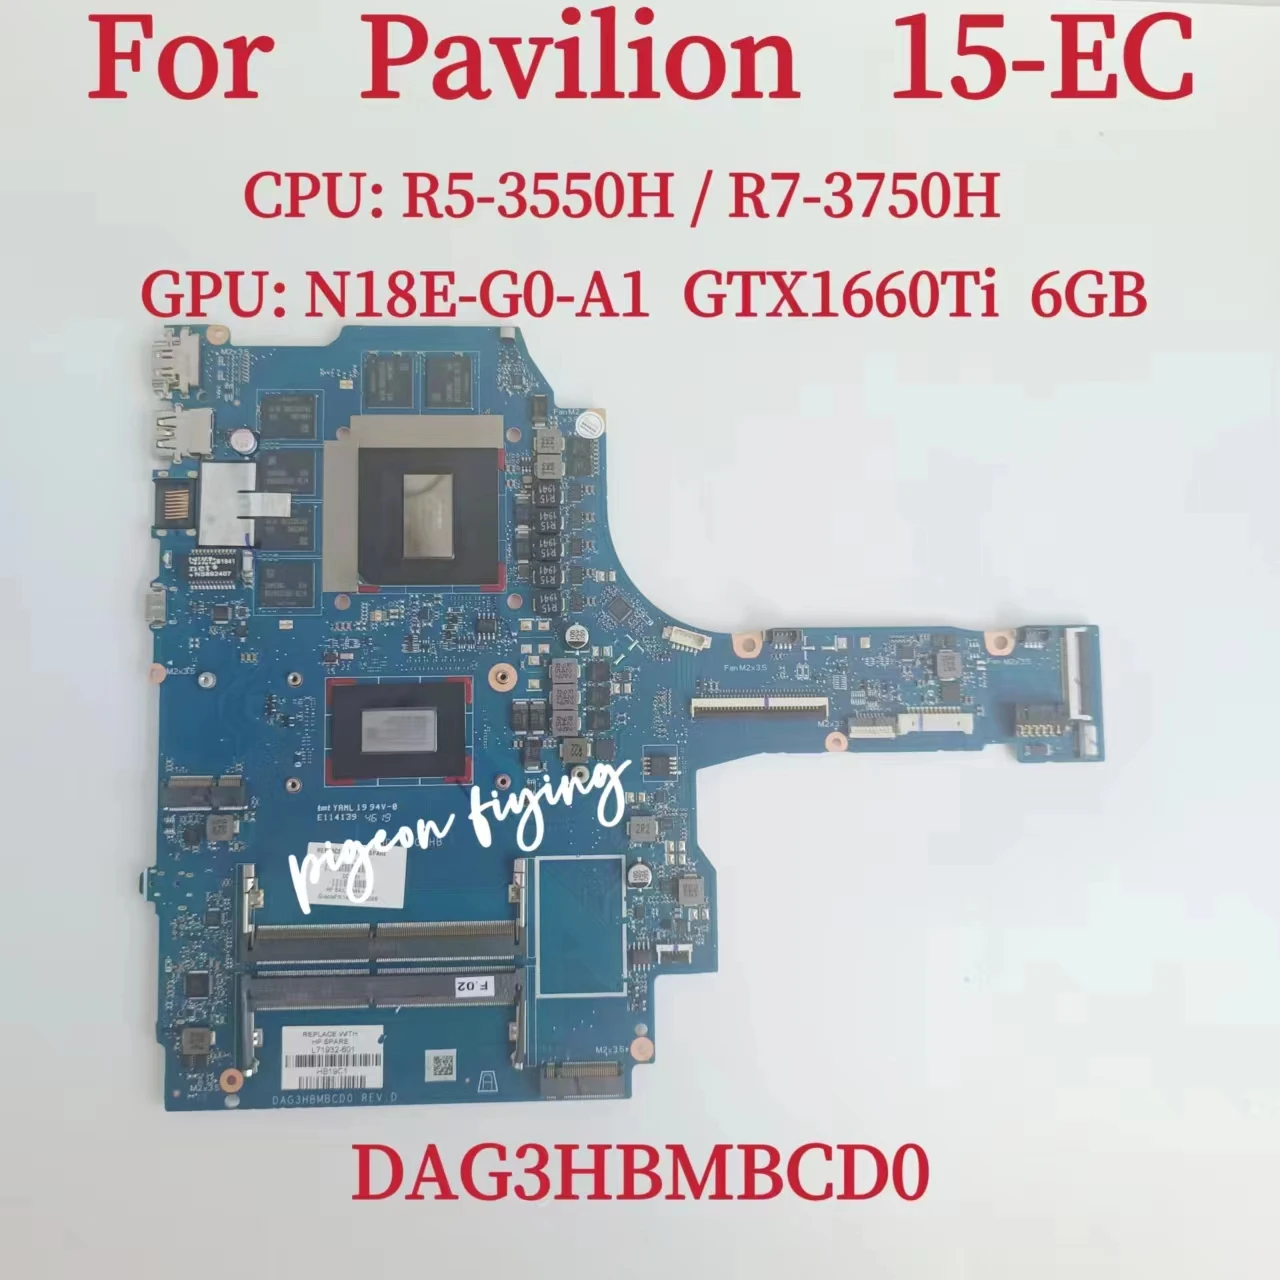 

DAG3HBMBCD0 For HP Pavilion 15-EC Laptop Motherboard CPU:R5-3550H R7-3750H GPU:GTX 1660TI 6GB L71931-601 L71932-601 100% Test OK